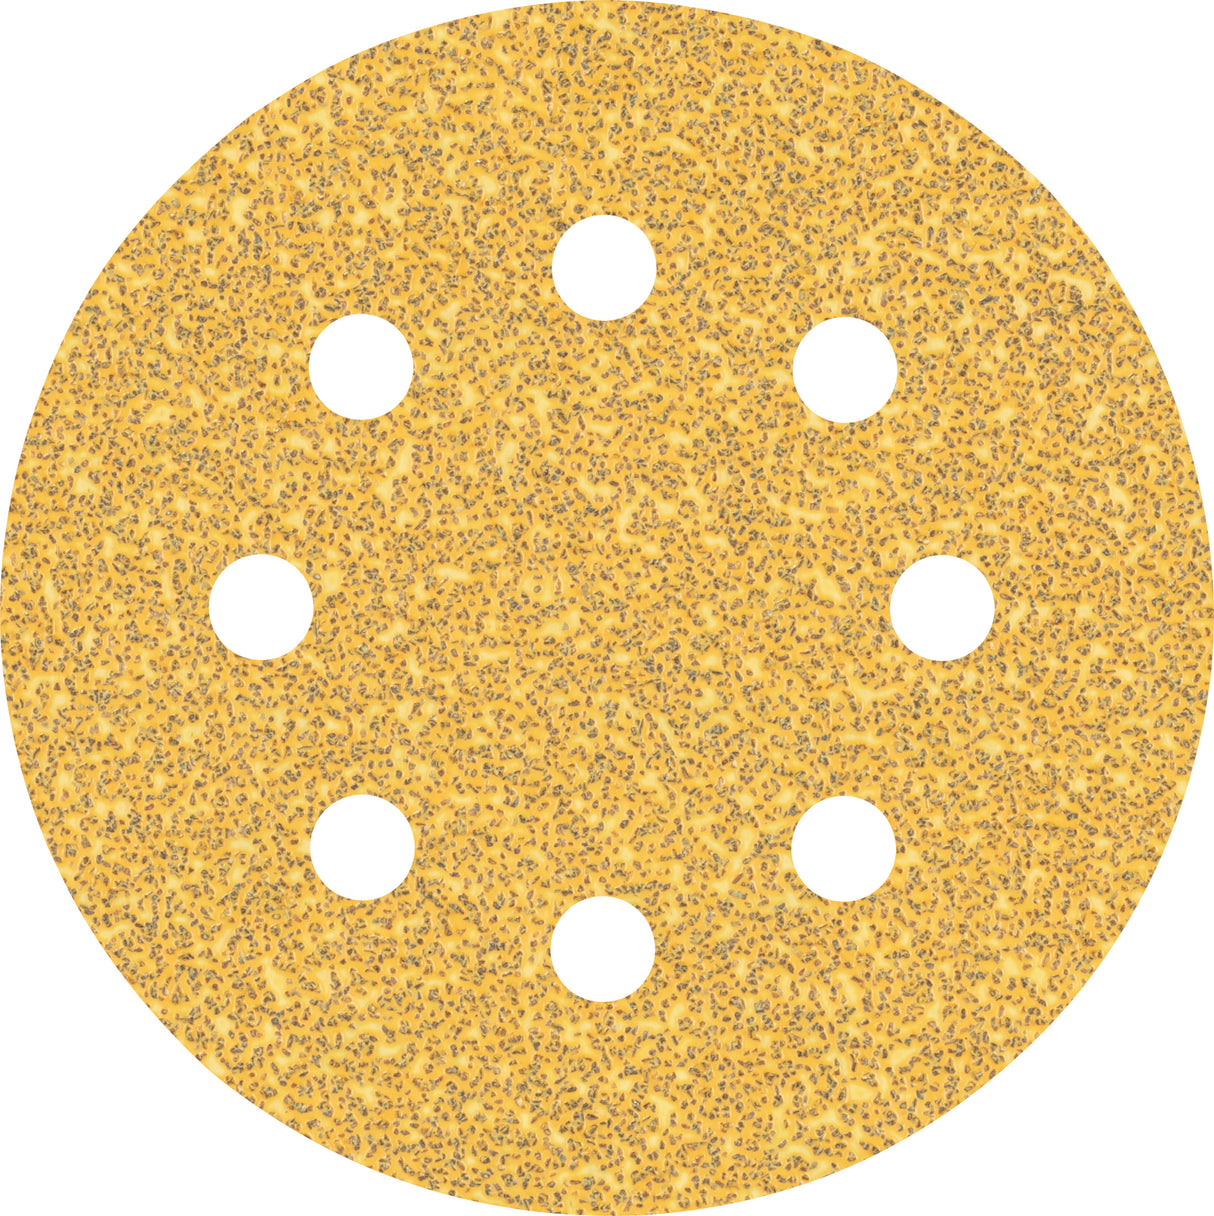 Bosch Professional Expert C470 Sandpaper - 115mm, 8 Holes, G 40  for Random Orbital Sanders